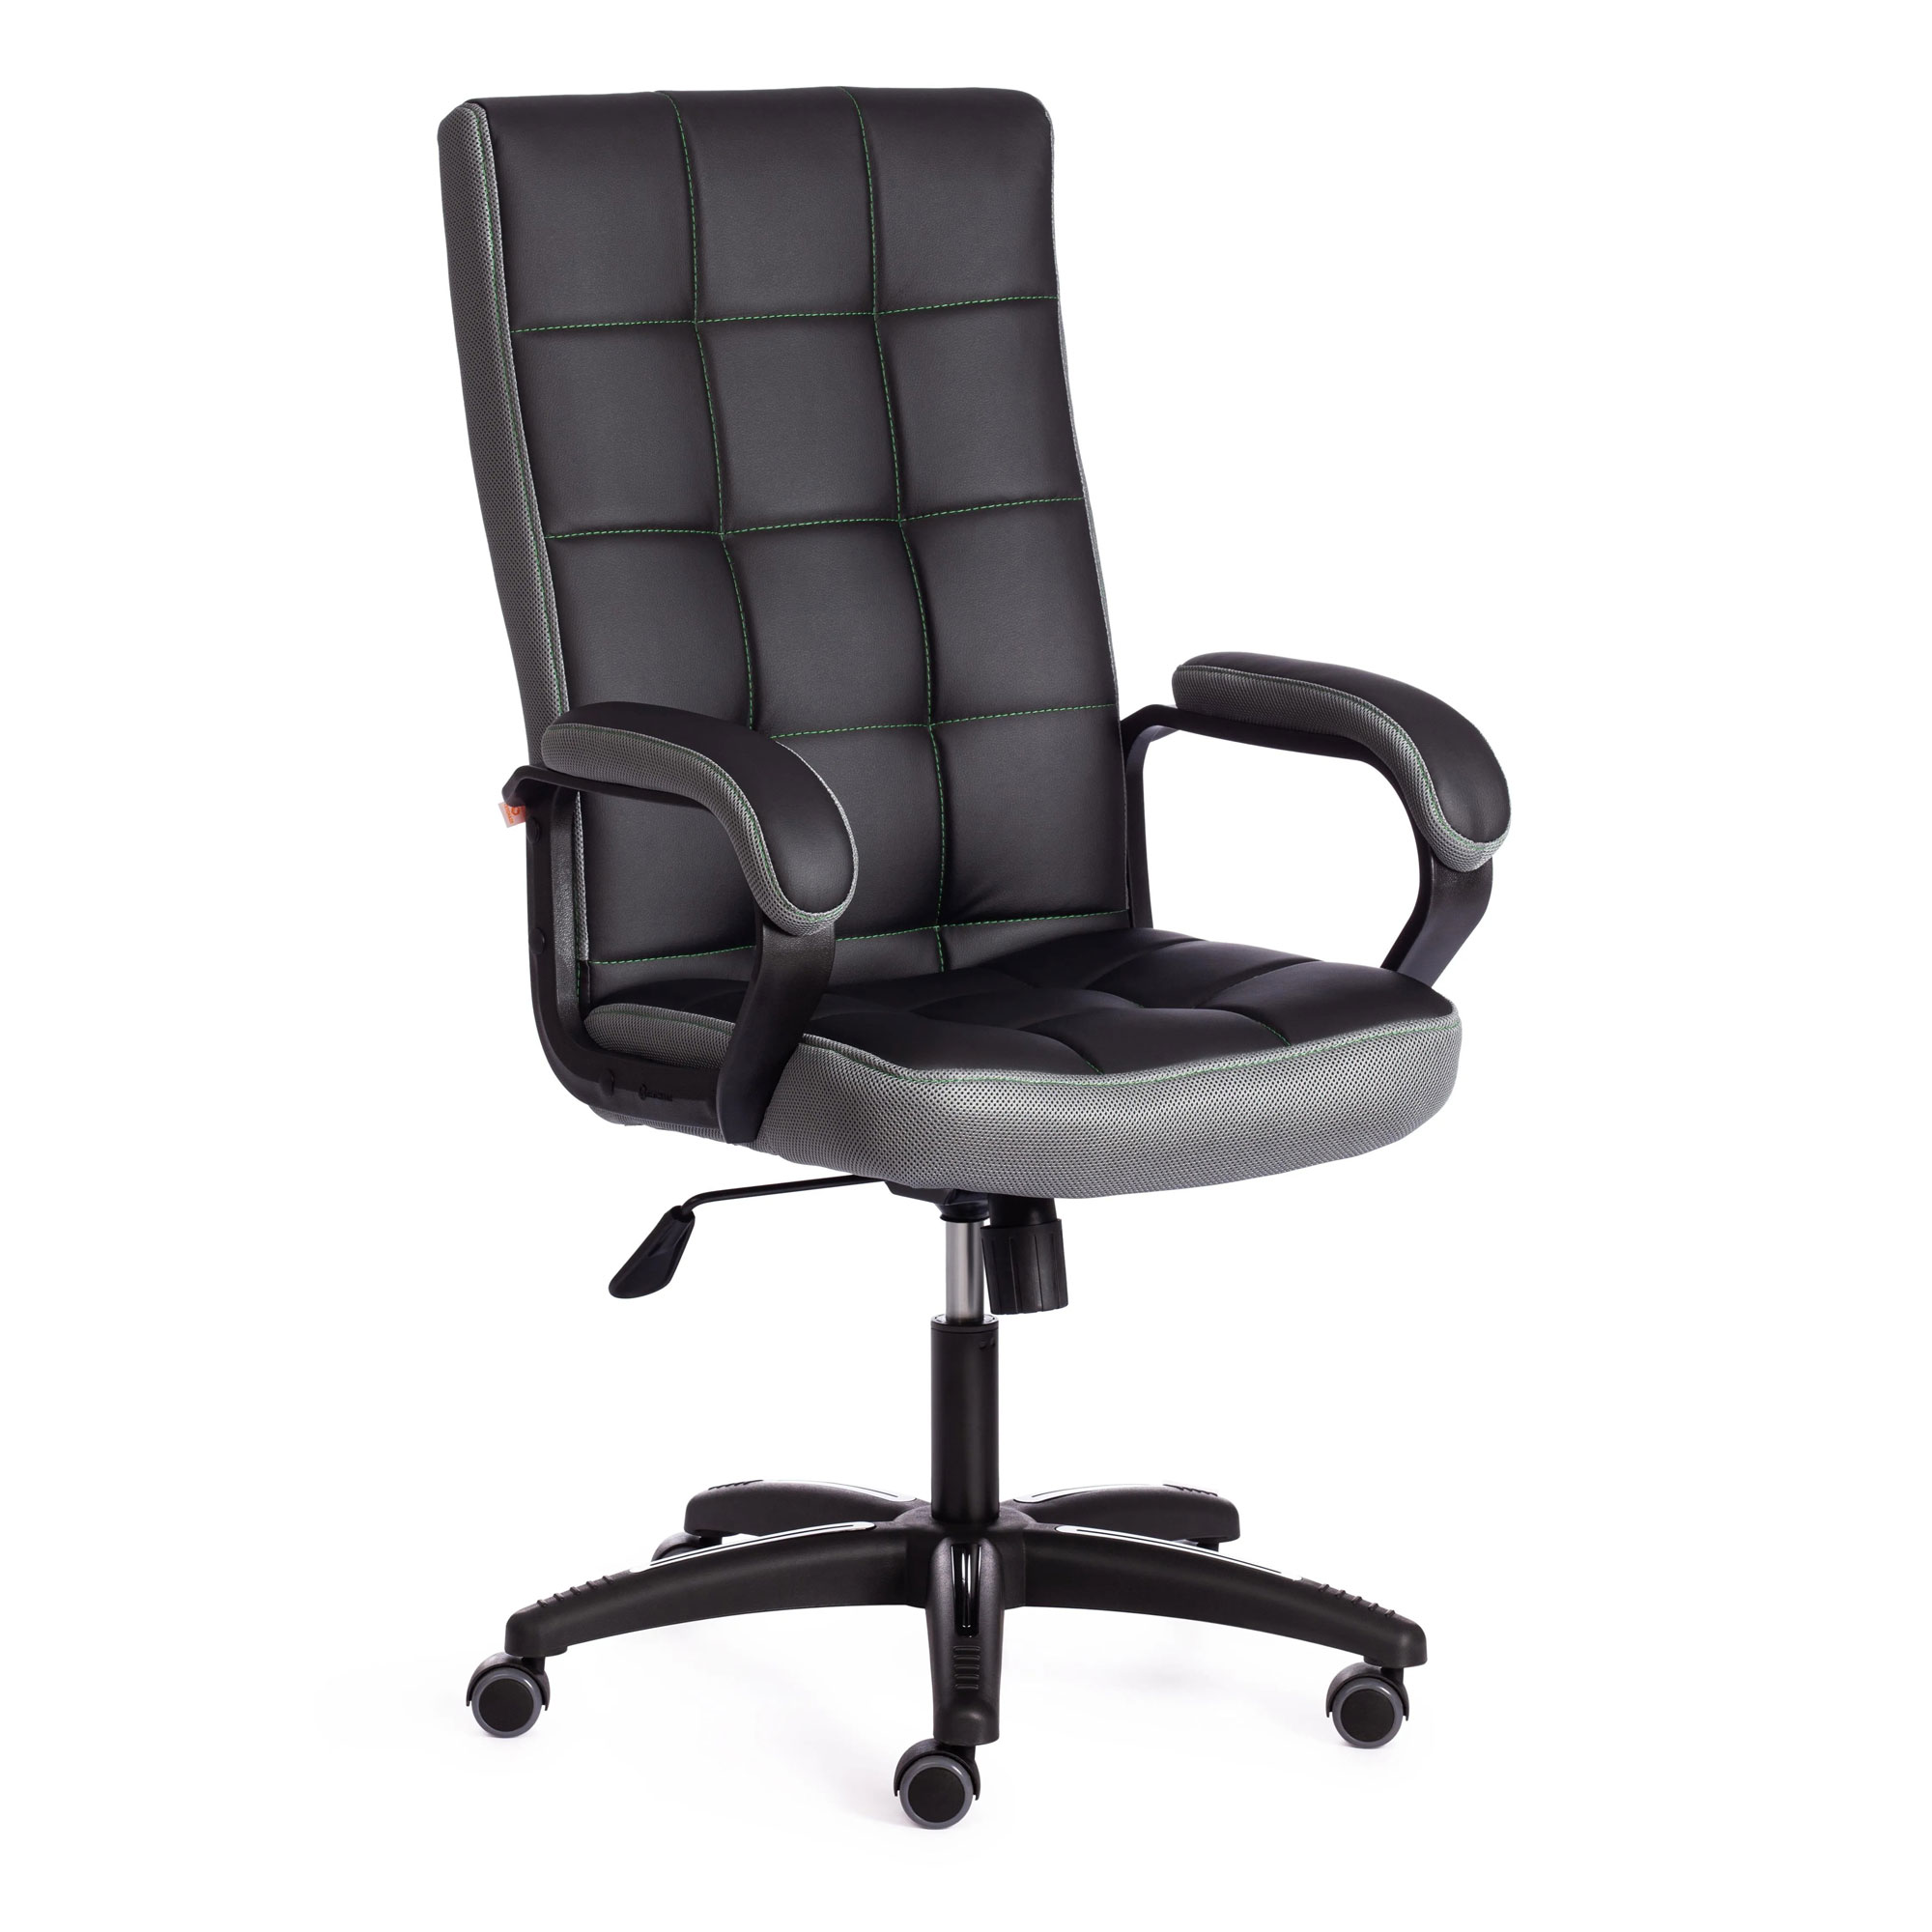 Кресло компьютерное TC искусственная кожа чёрное с серым 61х47х126 см кресло компьютерное tc driver искусственная кожа чёрное с синим 55х49х126 см